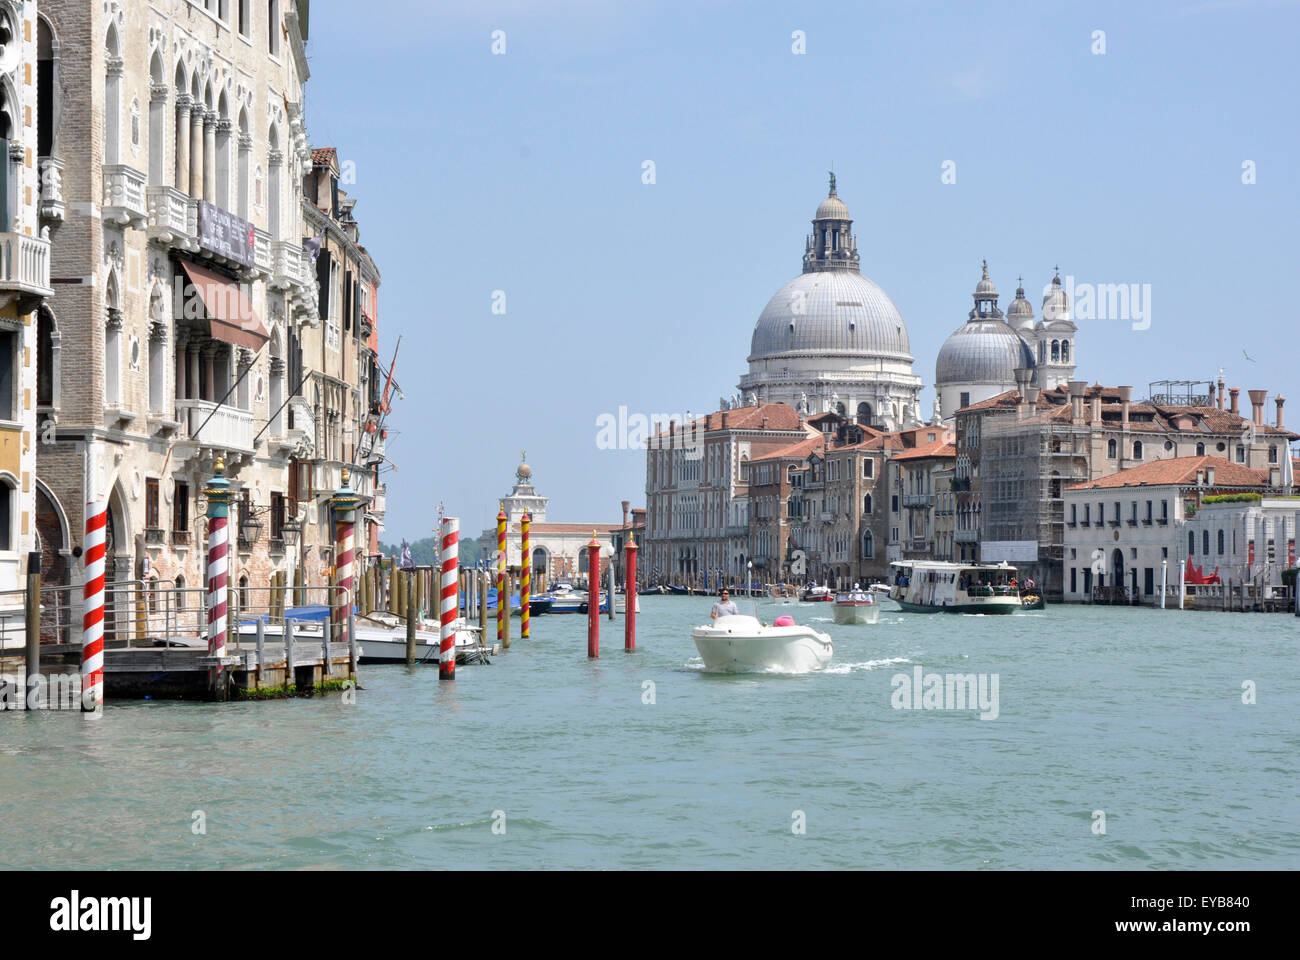 Italie - Venise - Grand Canal - San Marco - vue vers S Maria della Salute - brillante du soleil - blue sky Banque D'Images